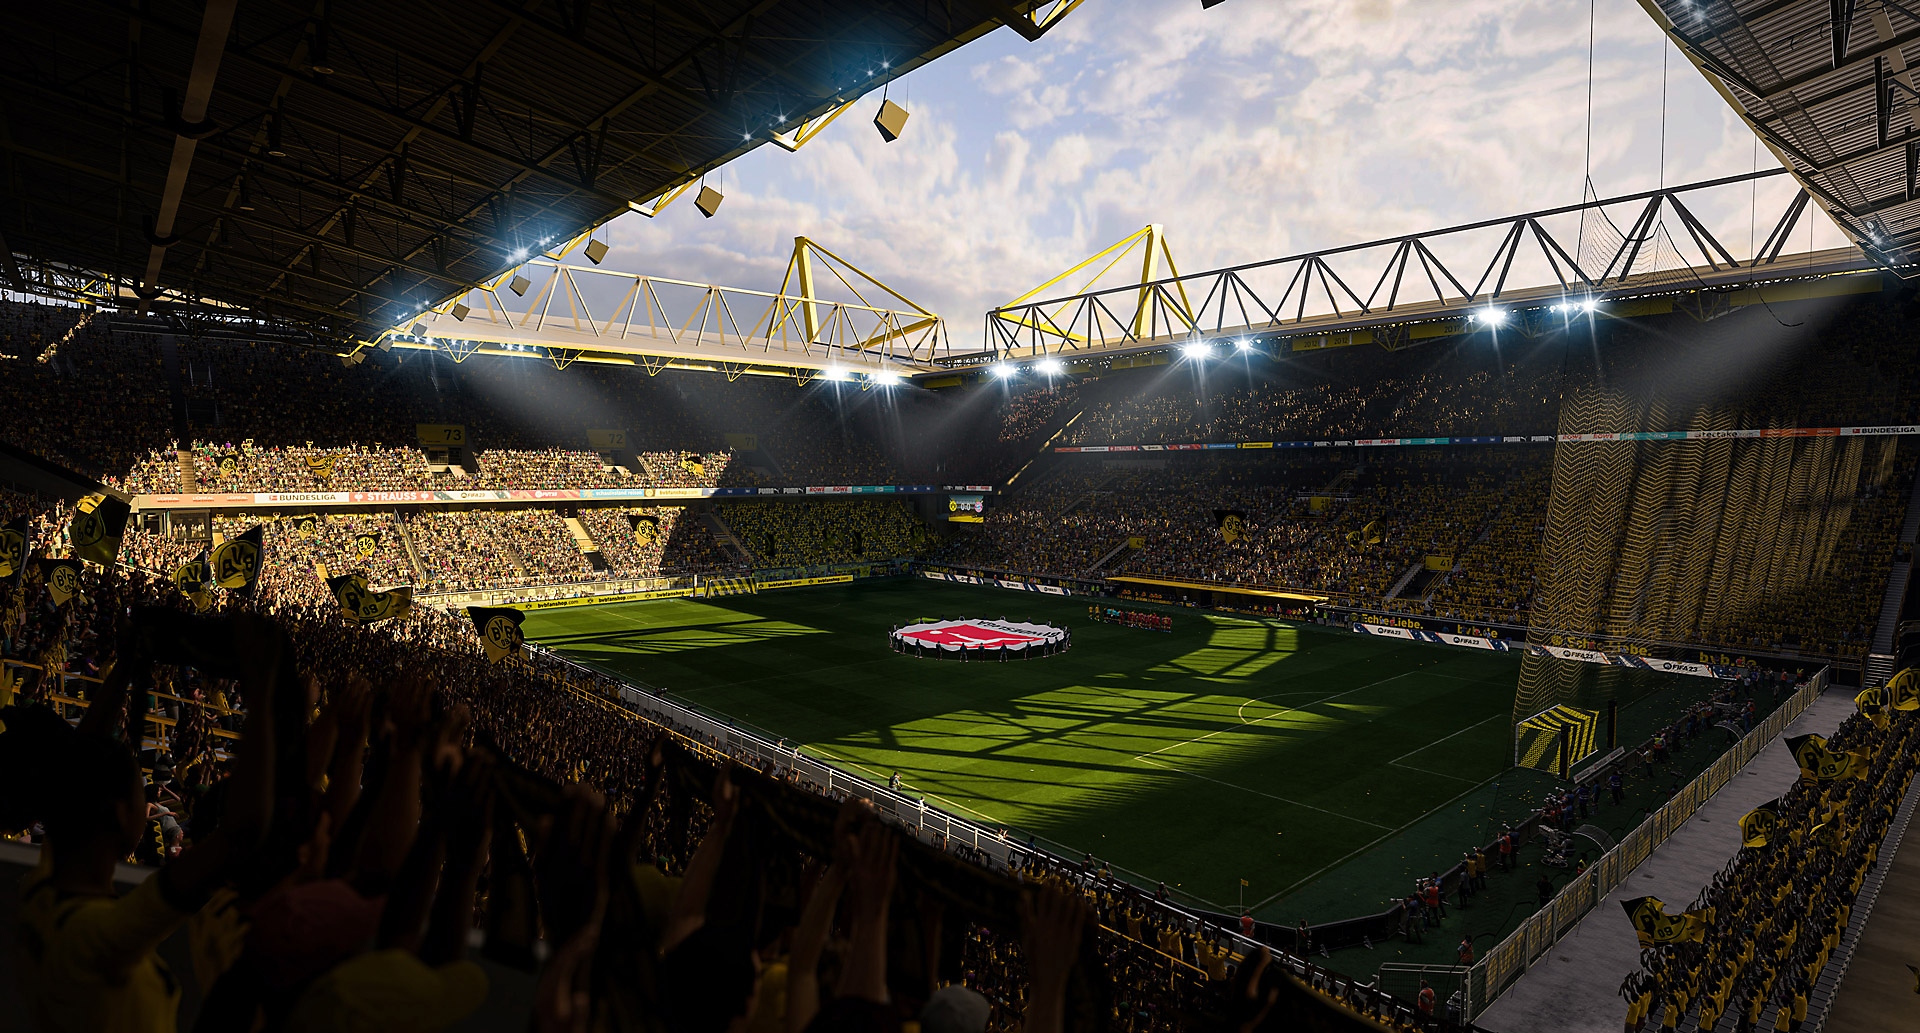 EA Sports FIFA 23-skjermbilde av et fotballstadion i solen